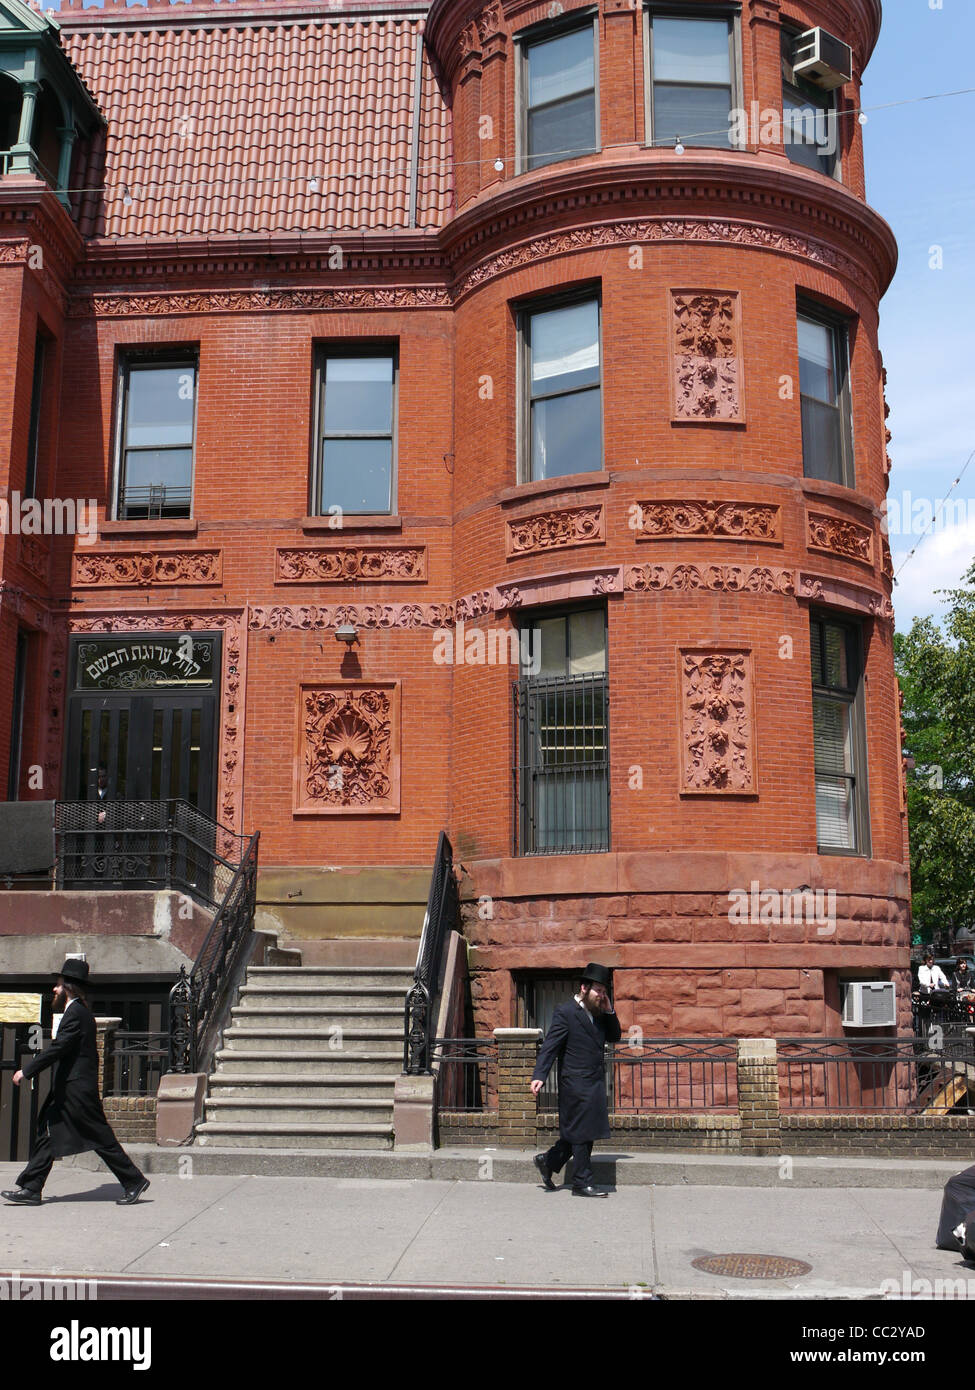 Brooklyn, New York, les juifs hassidiques Banque D'Images